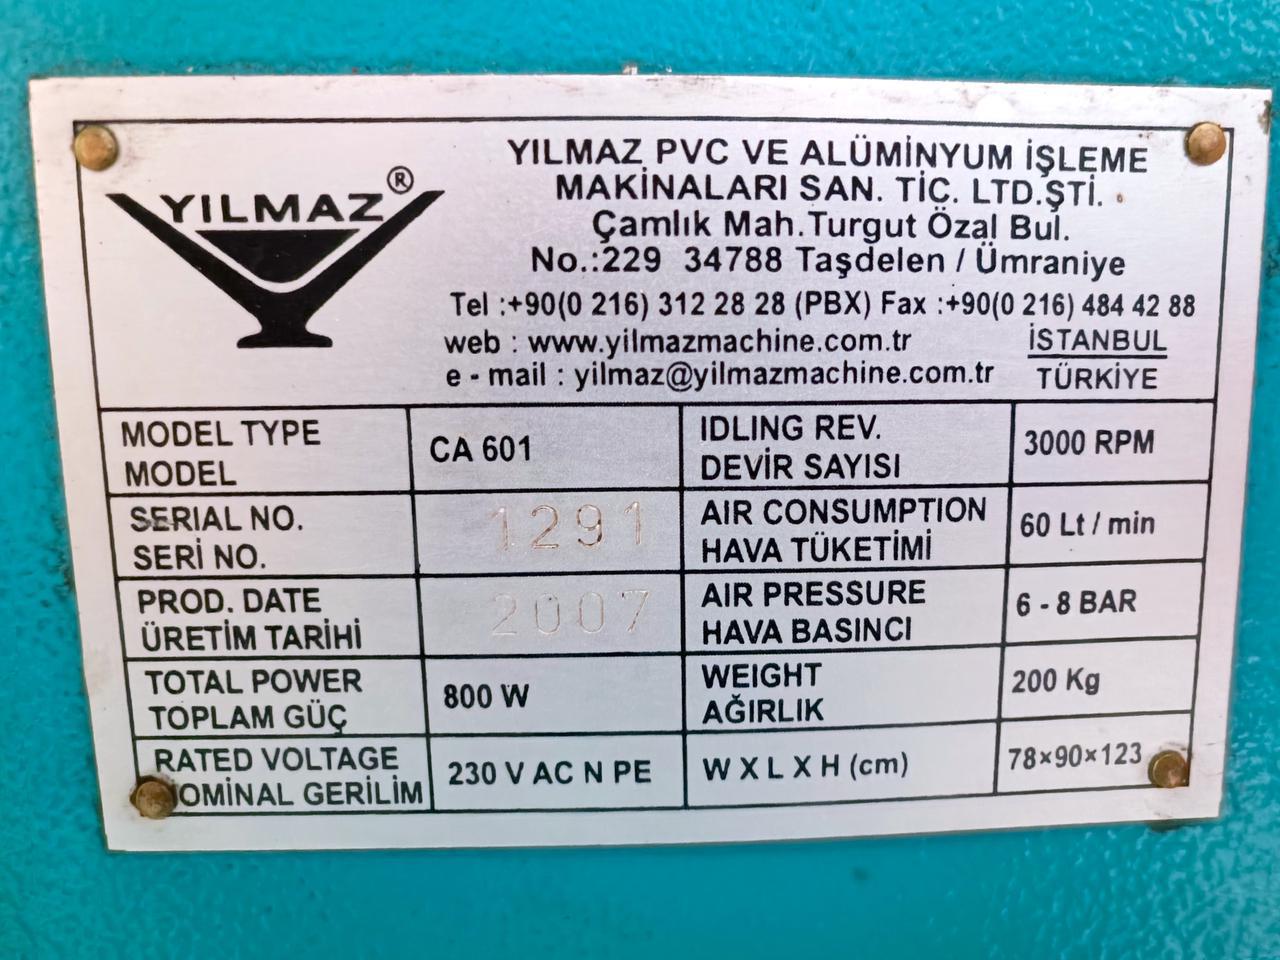 YILMAZ Одноголовочный комплект станков для производства окон ПВХ (Б/У оборудование)